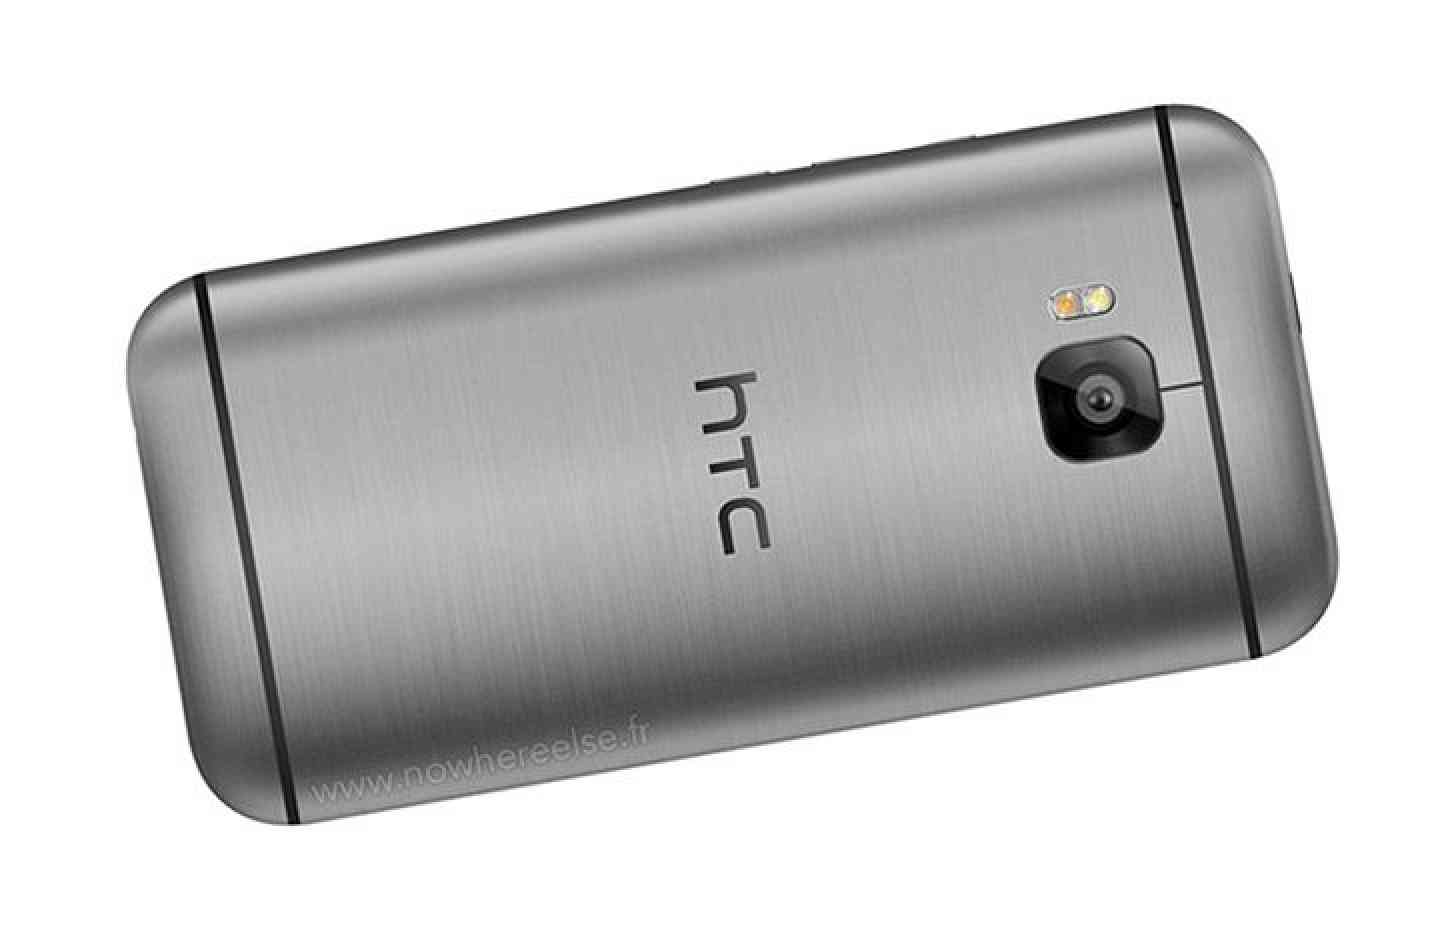 HTC One M9 rear render leak